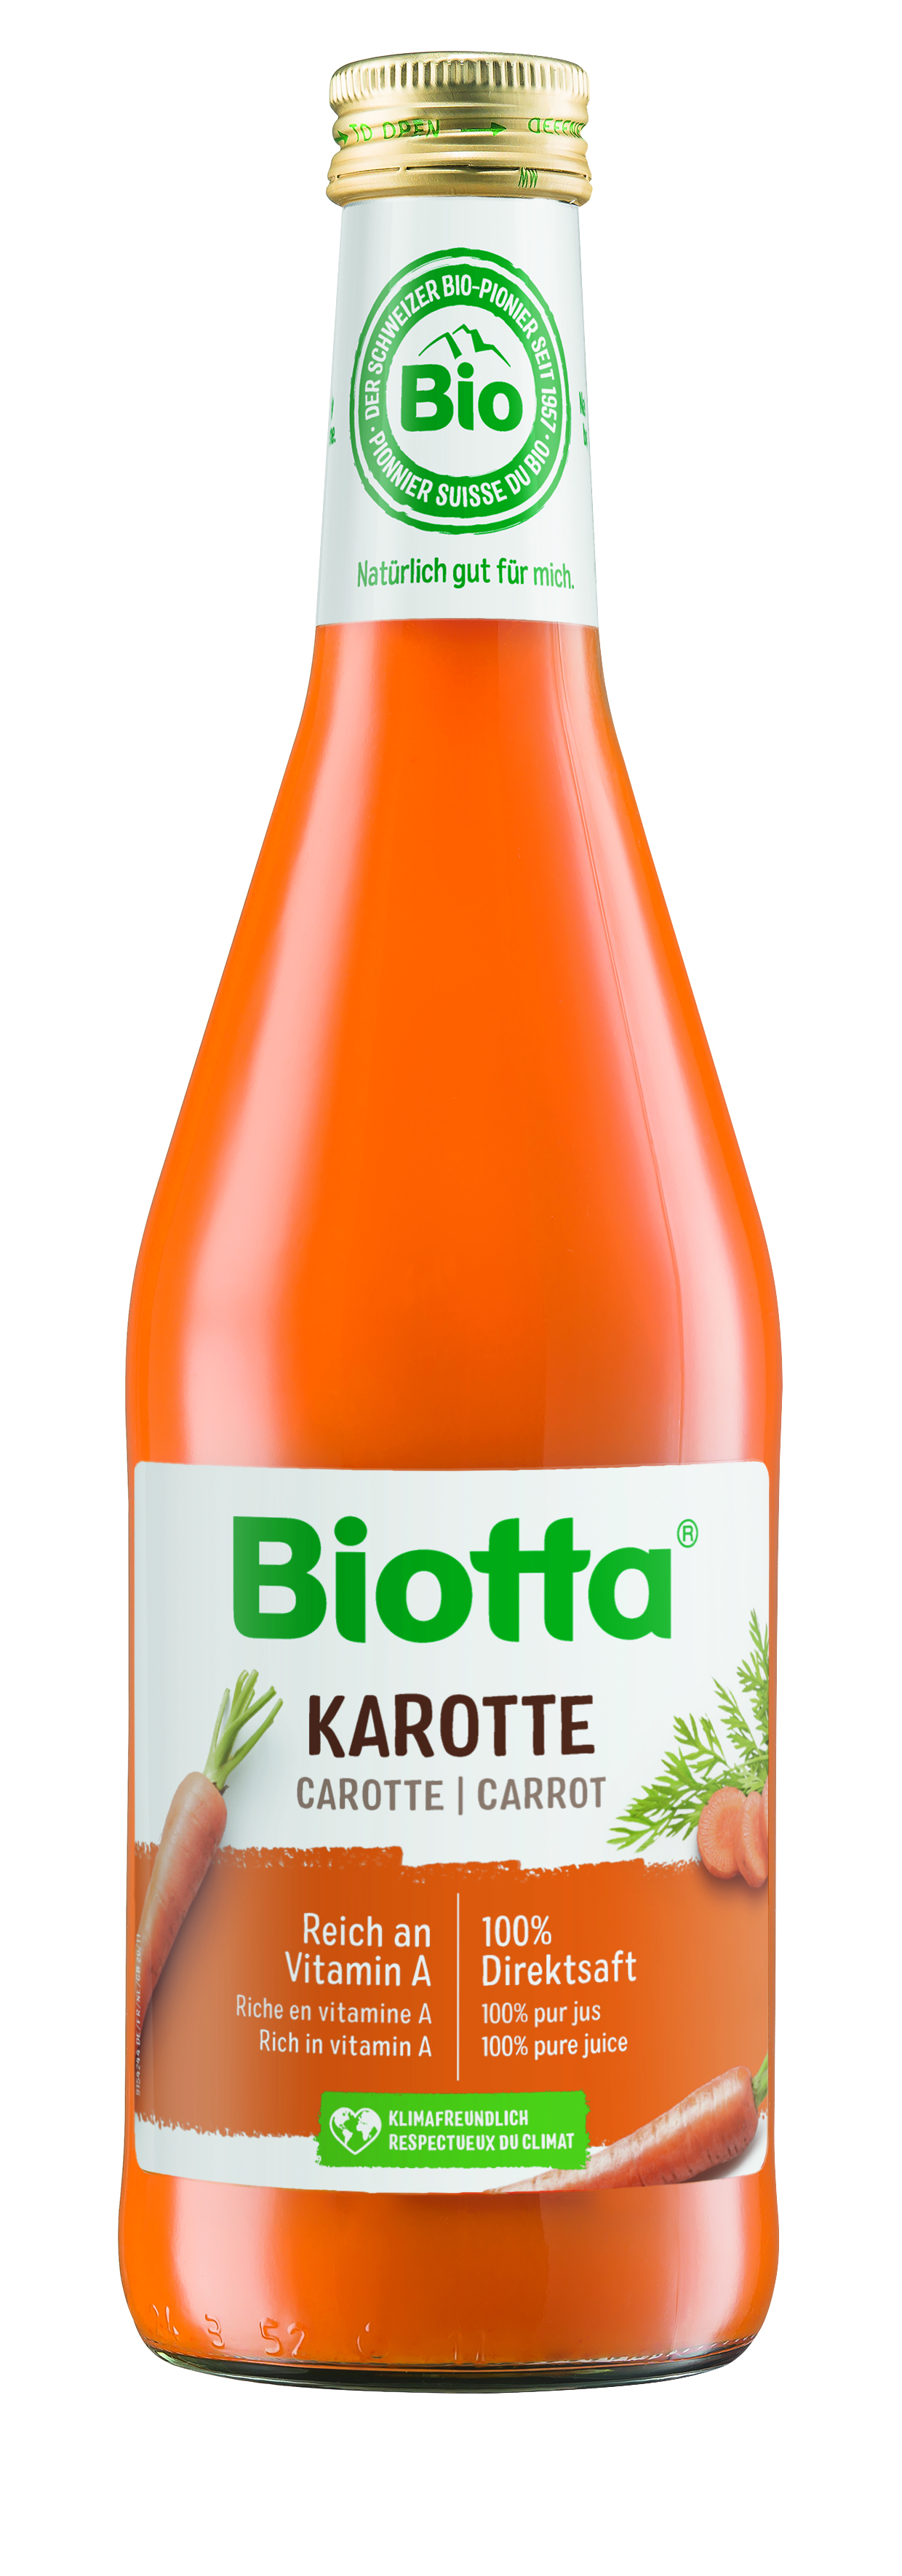 Biotta mrkvová šťava 5 kartónov - cena za 1 ks 4,066€ s DPH